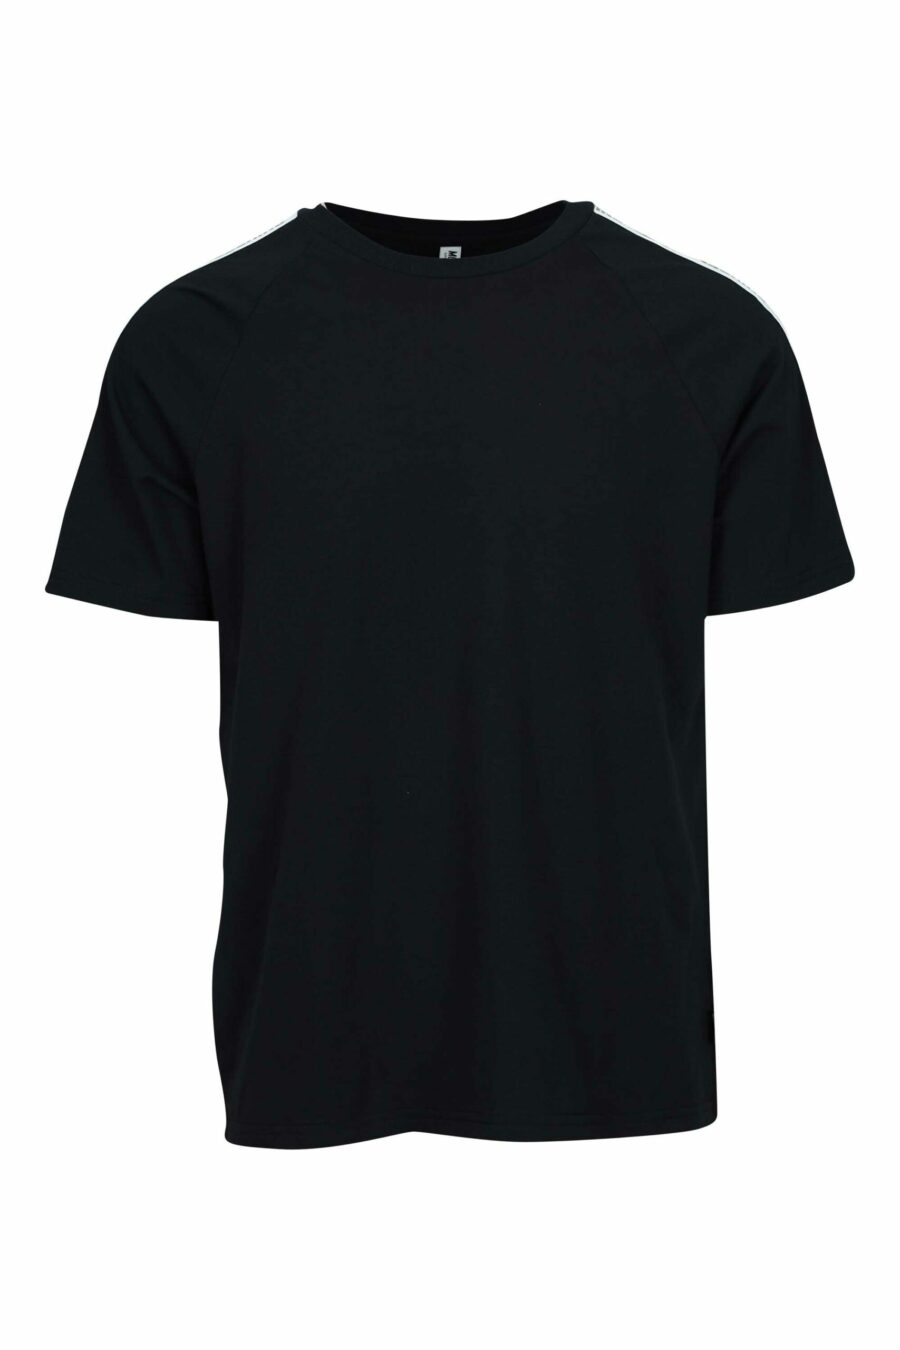 Camiseta negra con logo oso "underbear" en cinta hombros - 667113602356 scaled